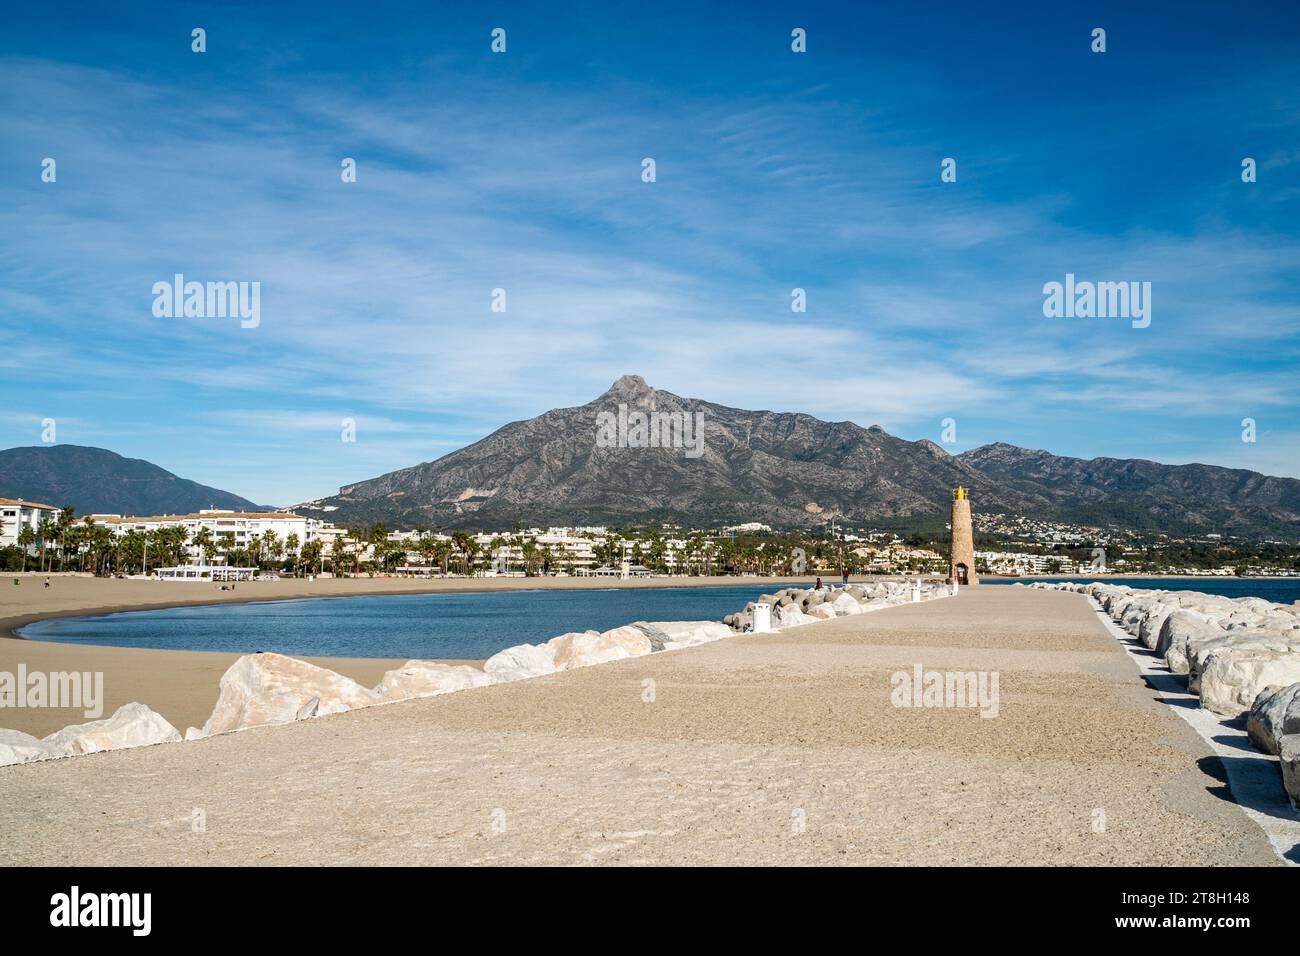 Un'immagine delle spiagge e delle catene montuose che circondano Puerto Banus. Foto Stock